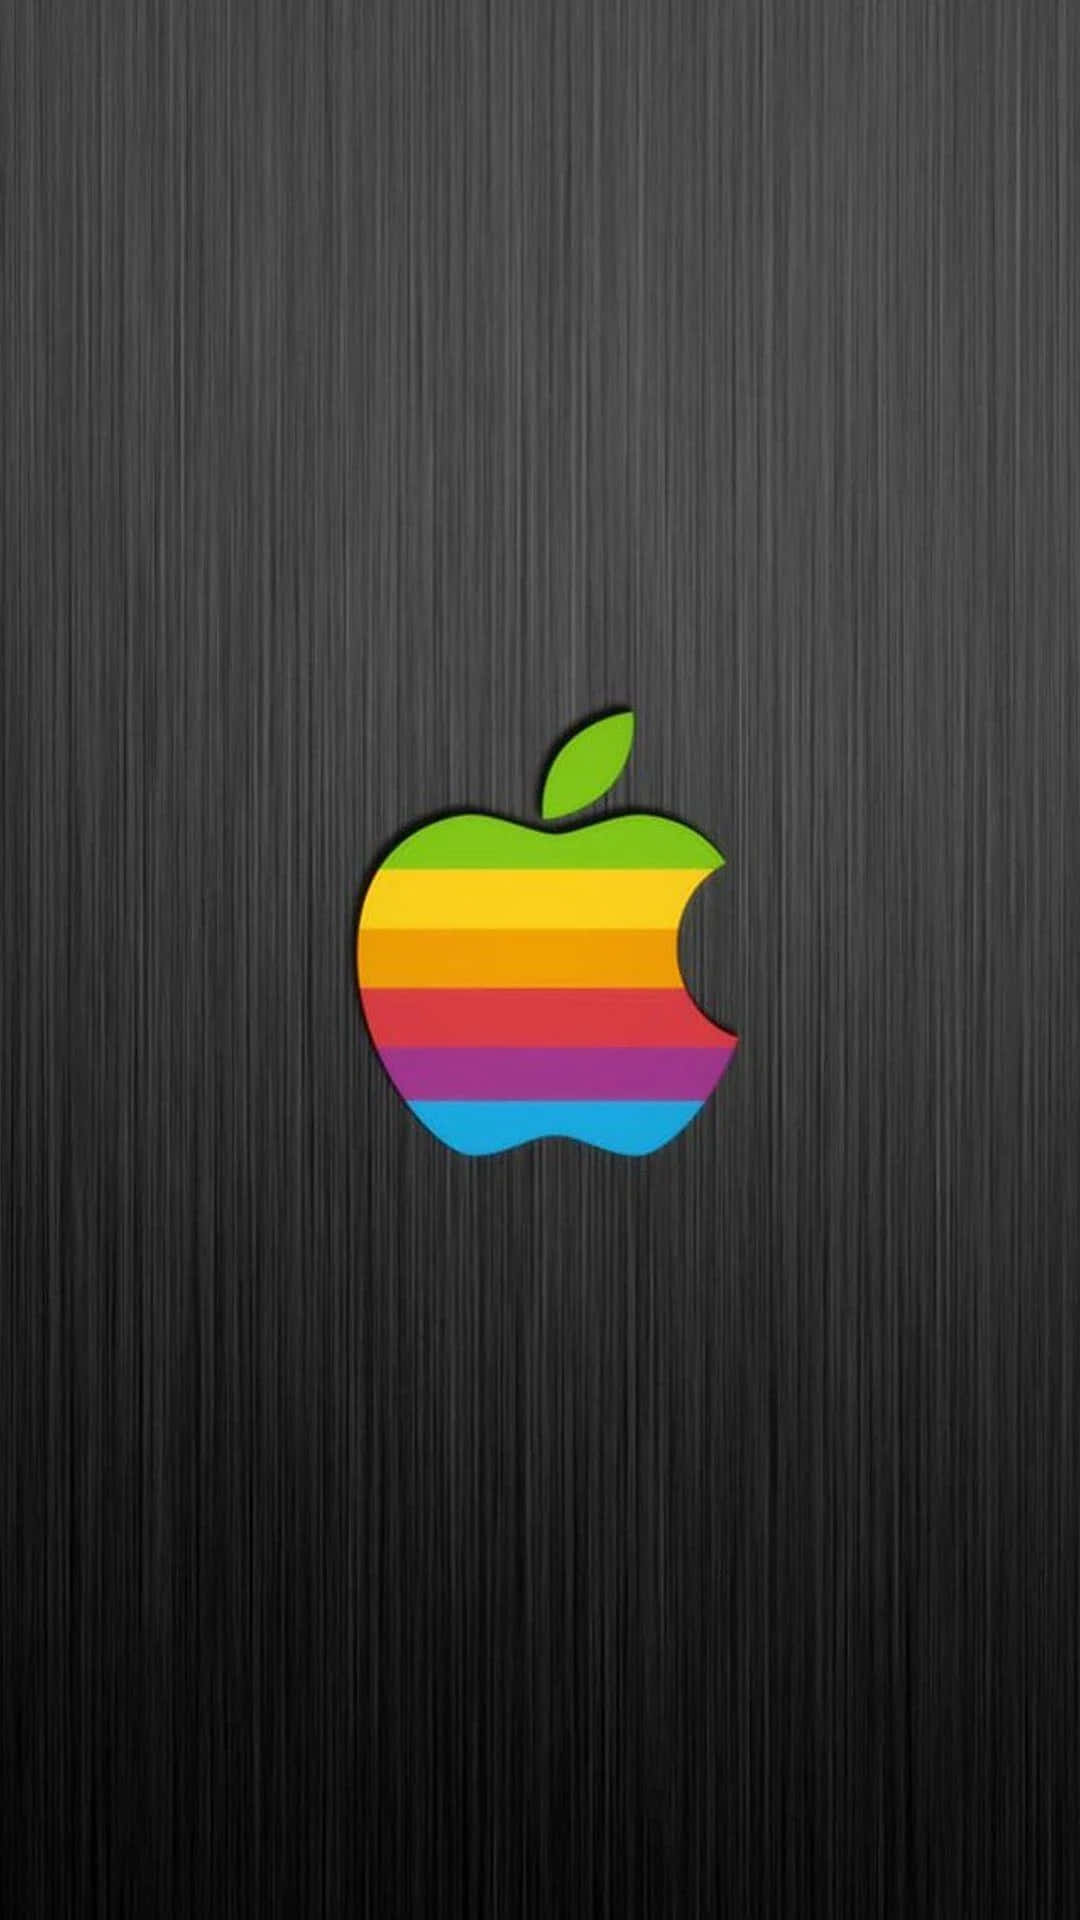 Brilhantee Colorido Gadget Da Apple Com Frutas De Maçã Sendo Exibidas.